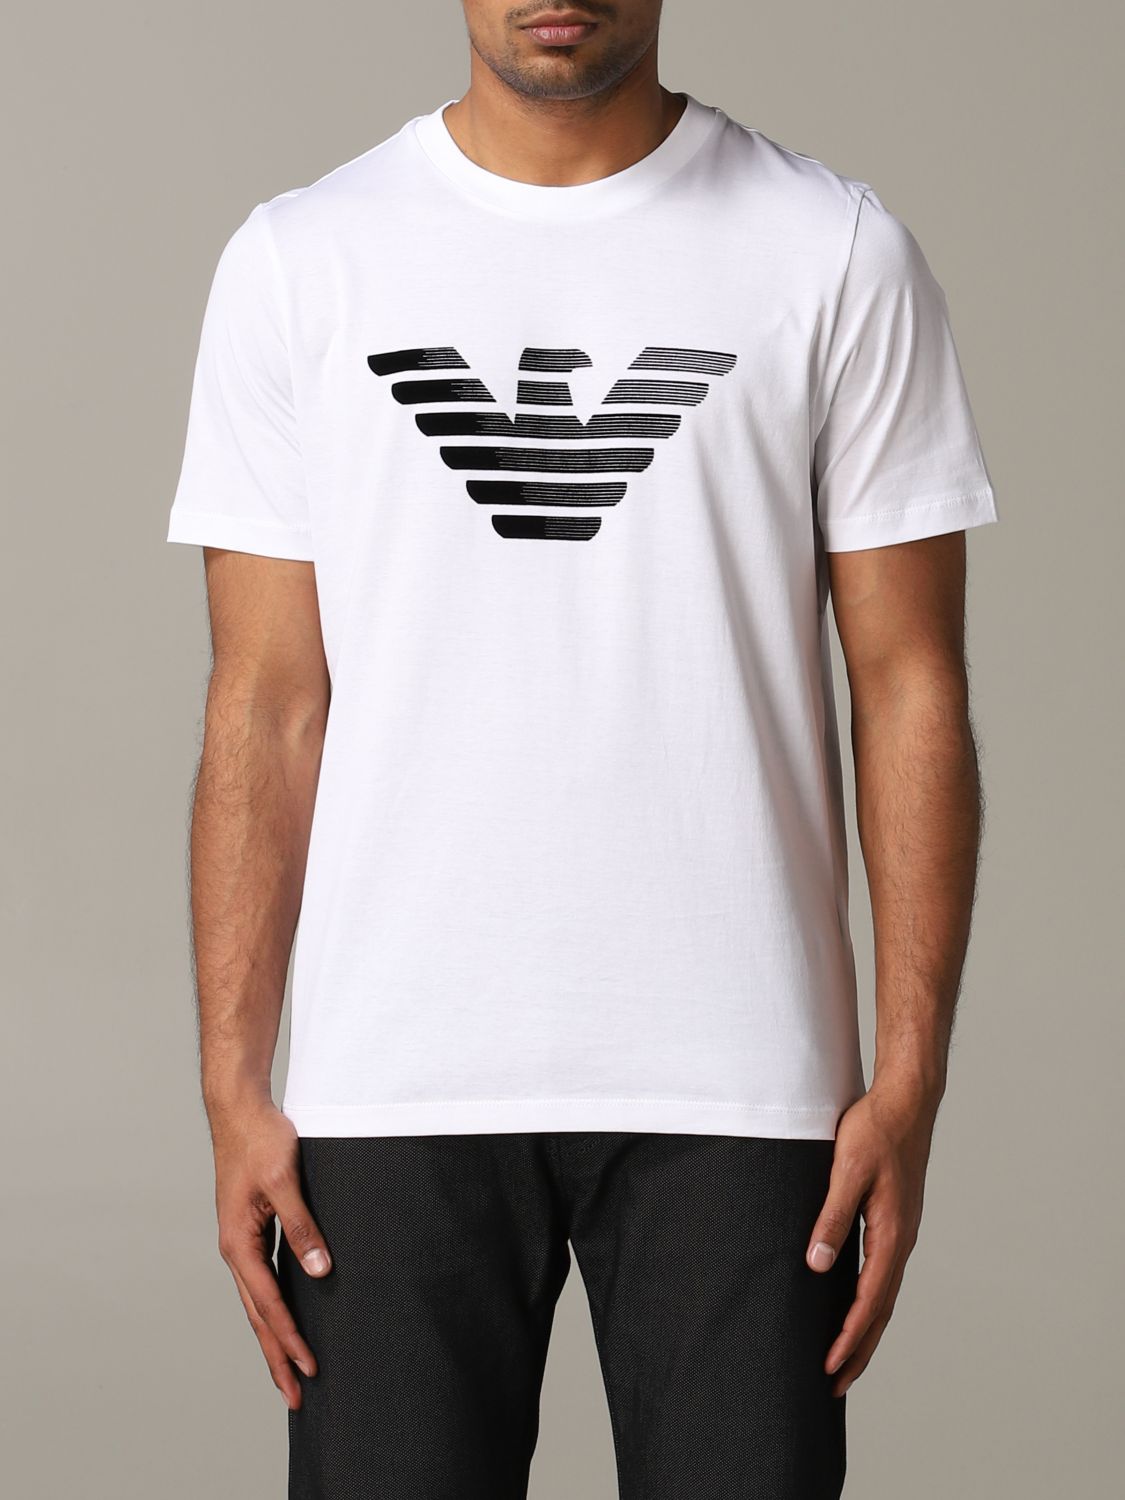 Camisetas Emporio Armani Hombre Flash Sales, SAVE